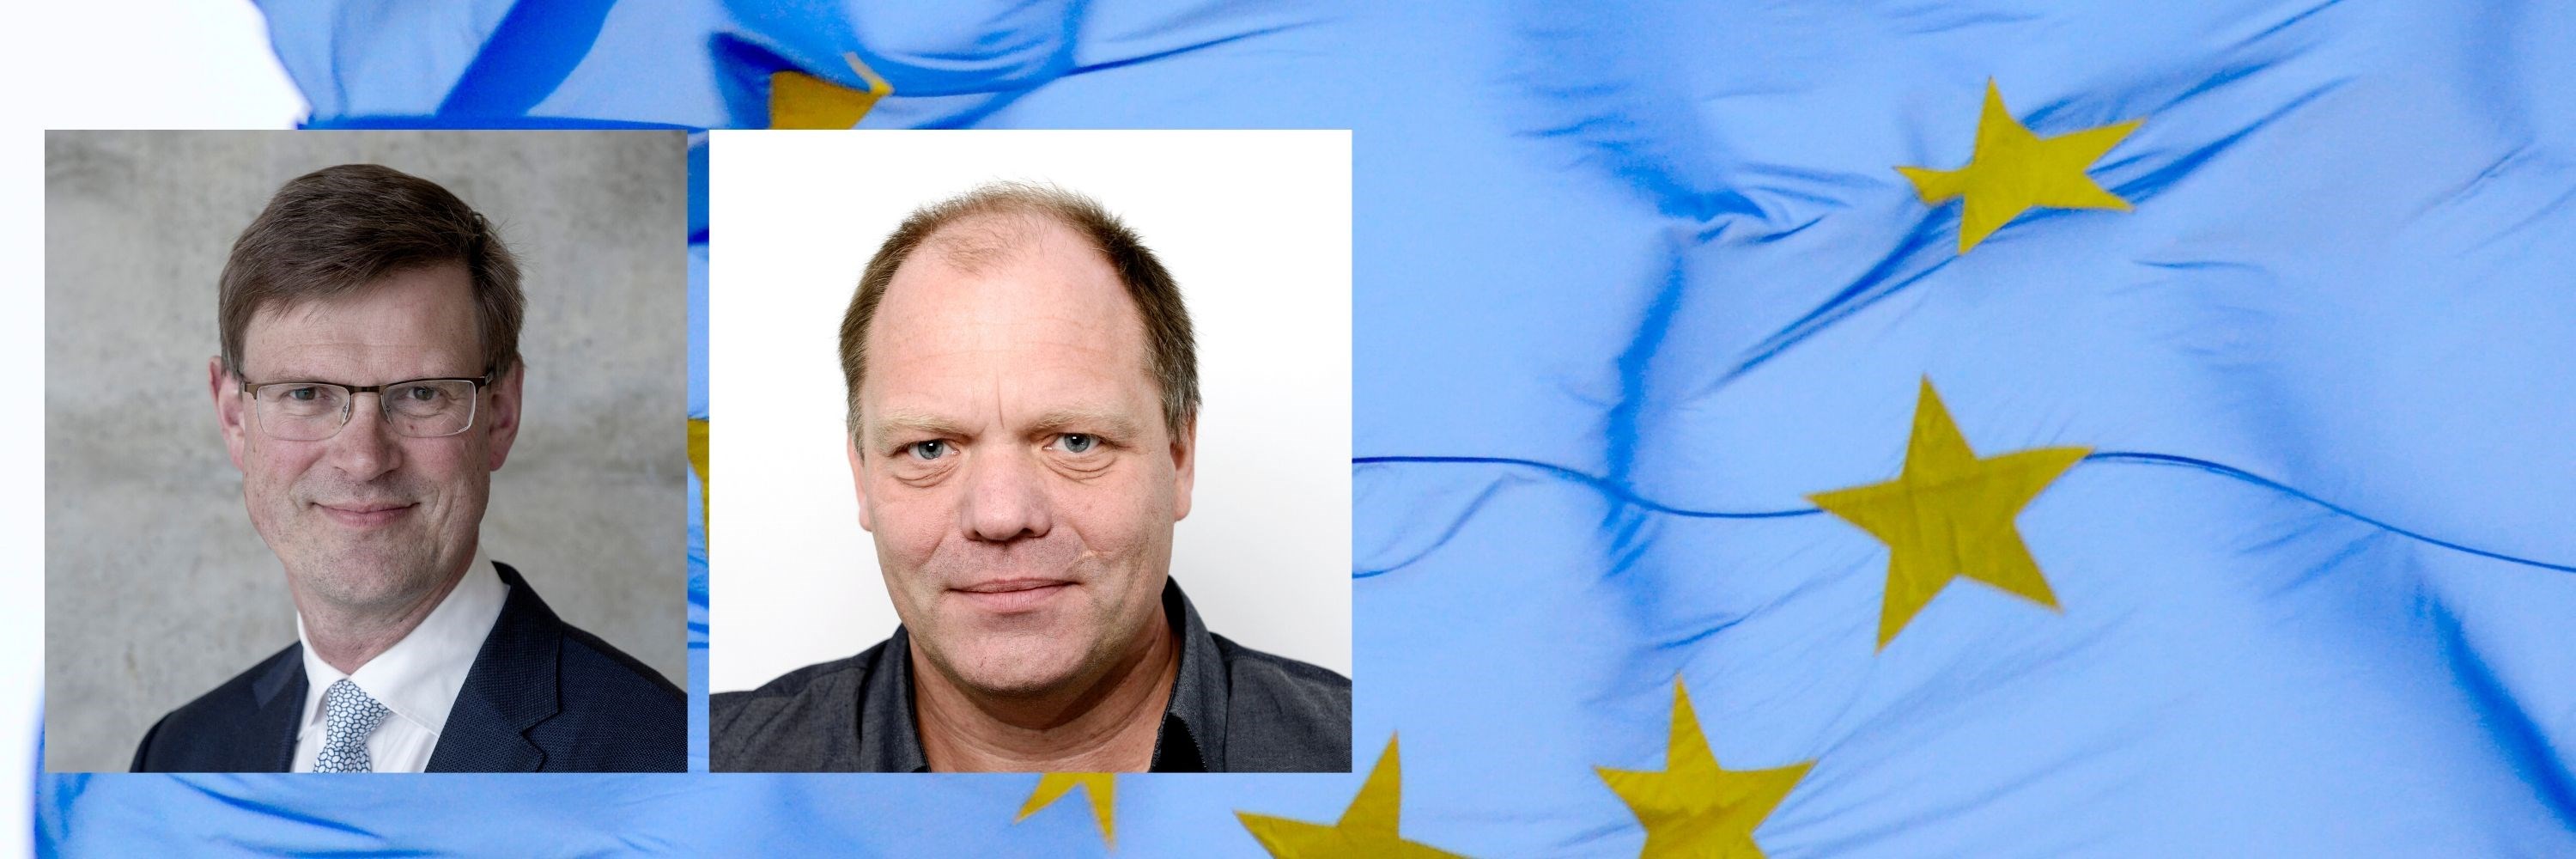 Bilde av EU-flagg, Aksel Mjøs og Alexander W. Cappelen